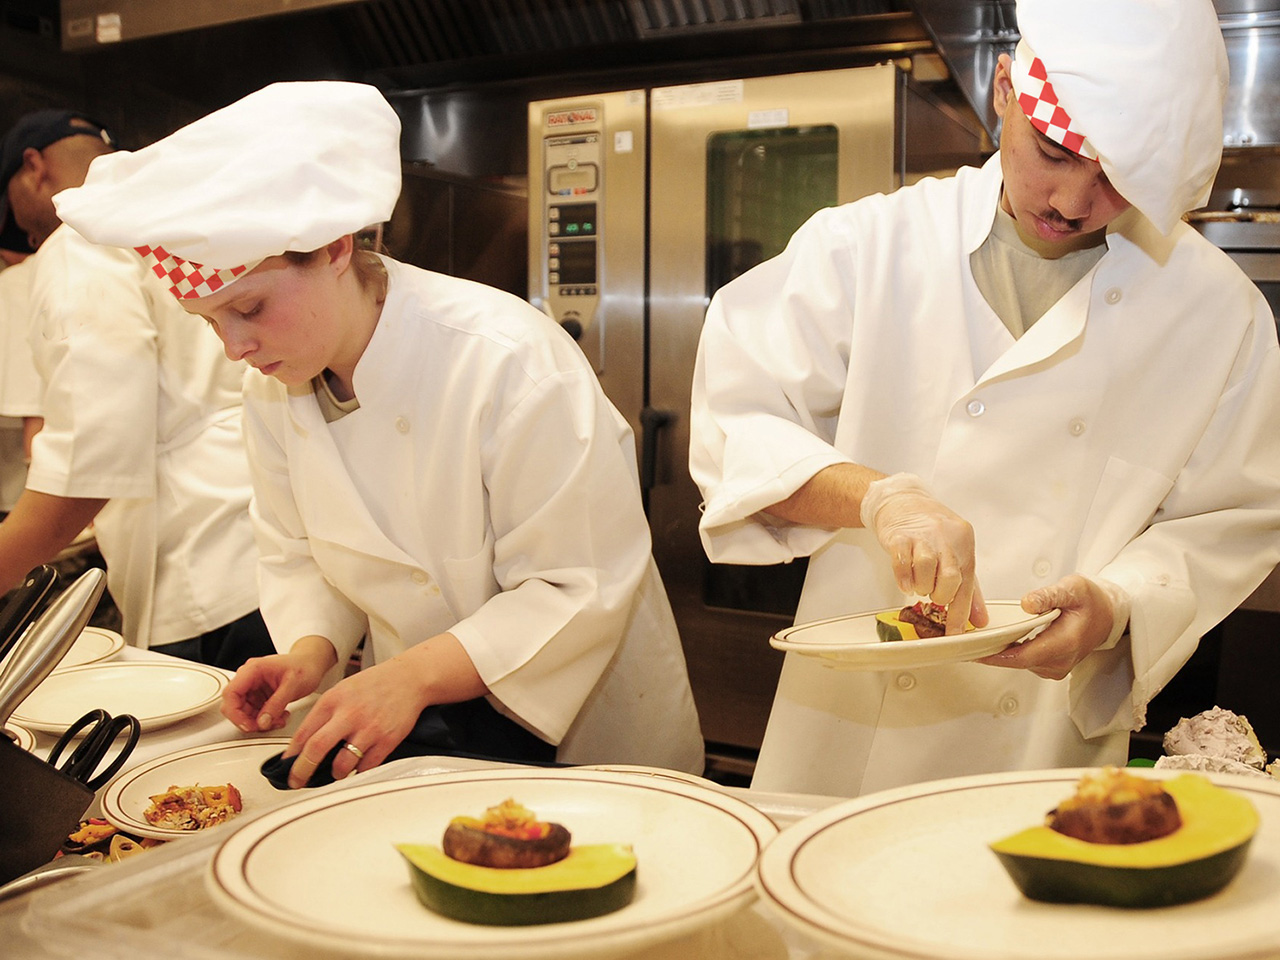 Mladi kuhari okupili su se na kulinarskoj olimpijadi kako bi iskazali svoje kulinarske vještine.